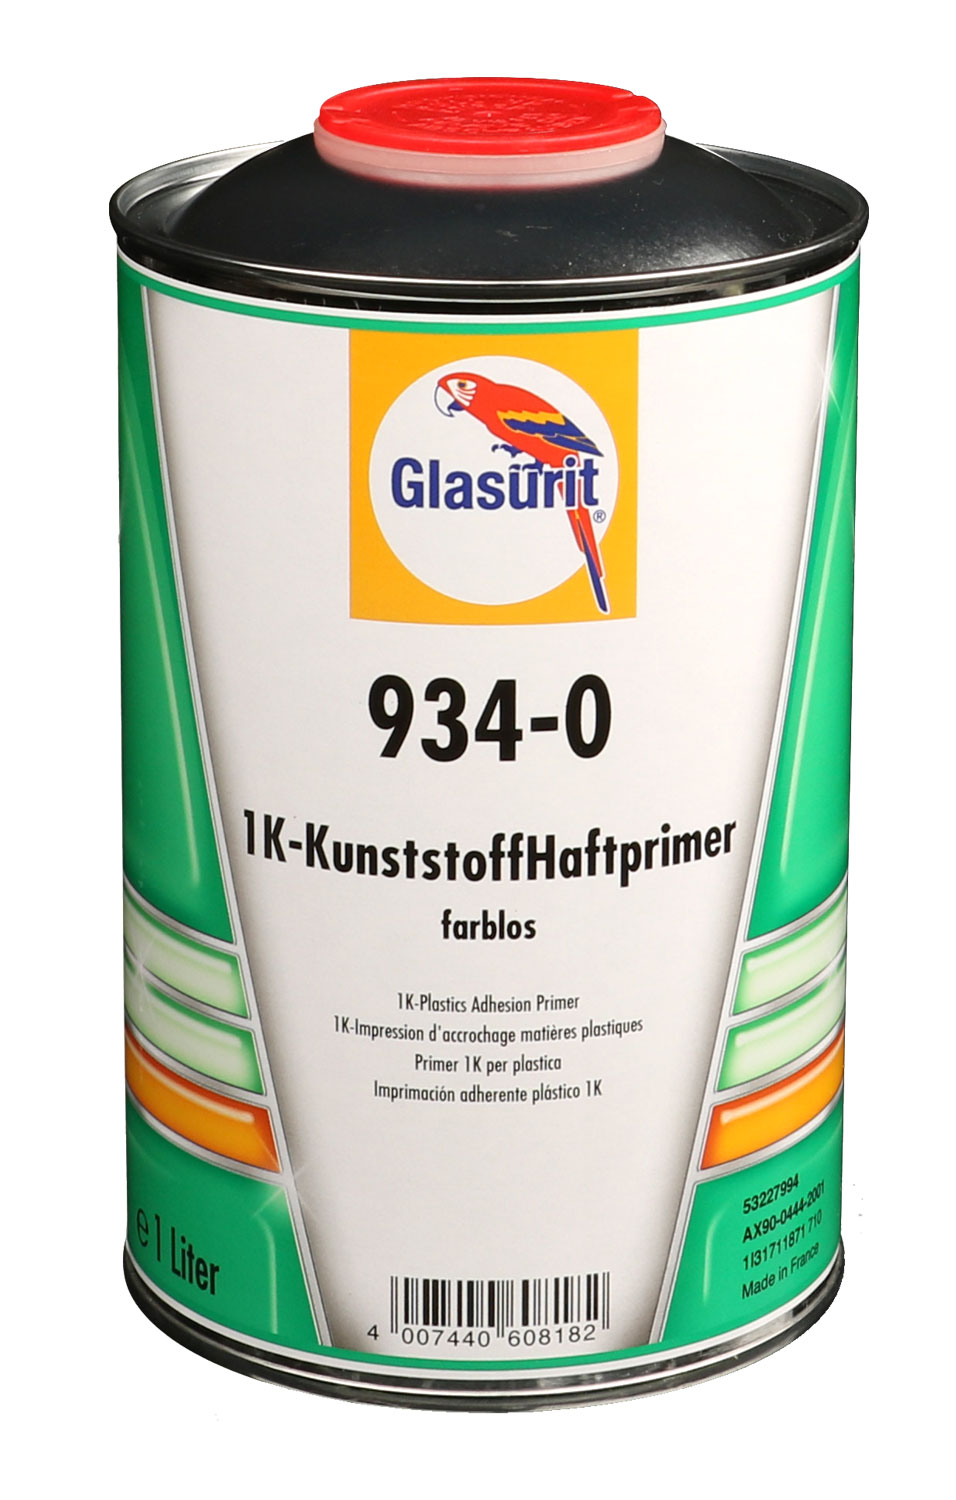 Glasurit 1K-Kunststoffhaftprimer 934-0,farblos